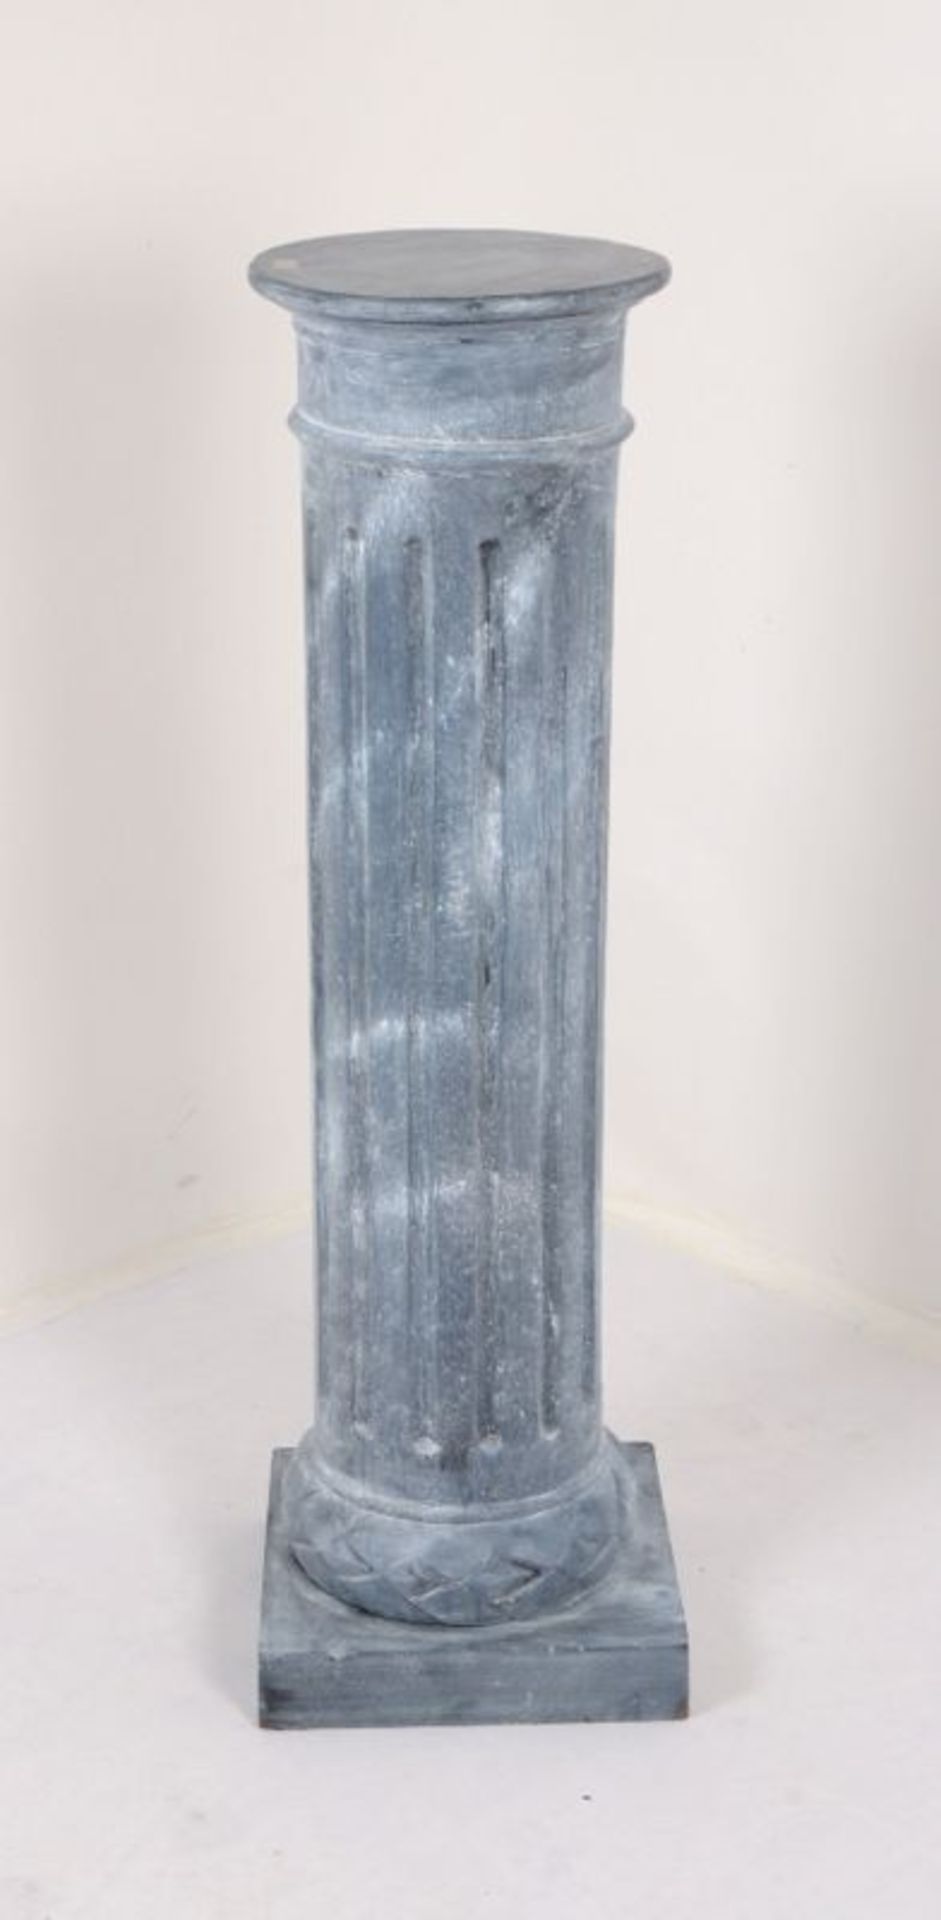 Säule, Holz grau gefasst, kannelliert; Höhe 119 cm, Durchmesser Ø 32 cm - Bild 2 aus 2